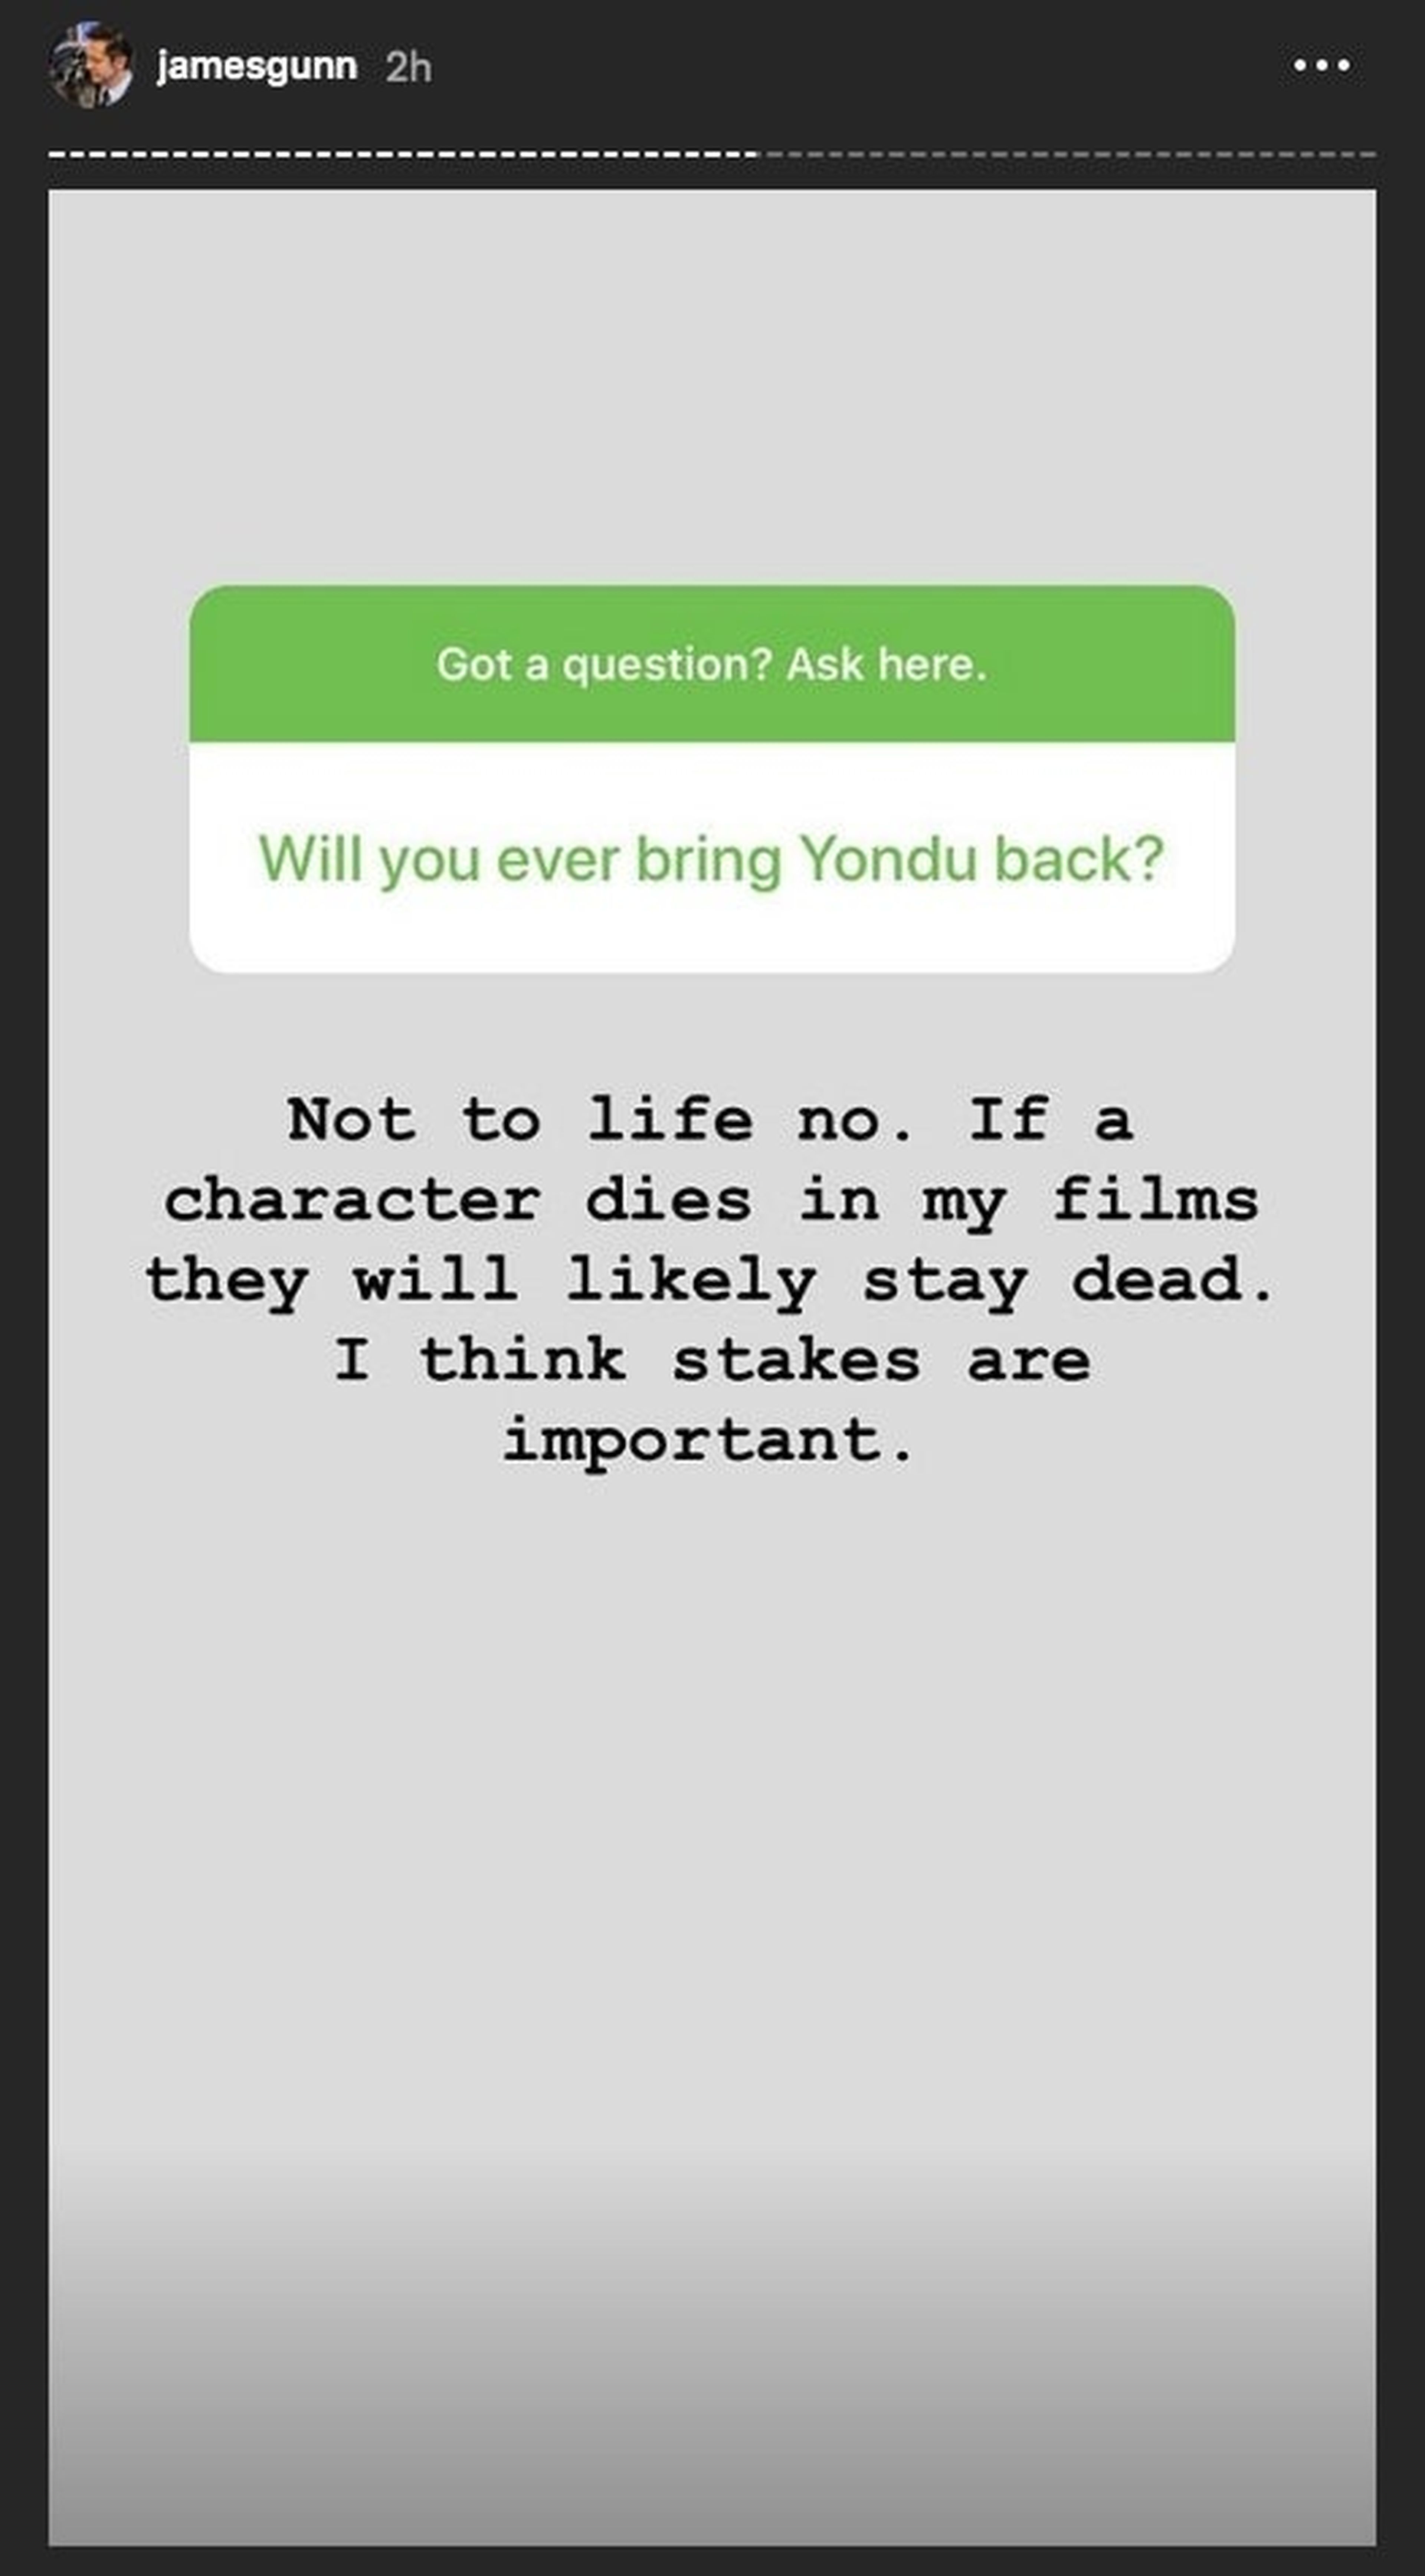 Story de James Gunn sobre el posible regreso de Yondu a Guardianes de la Galaxia 3